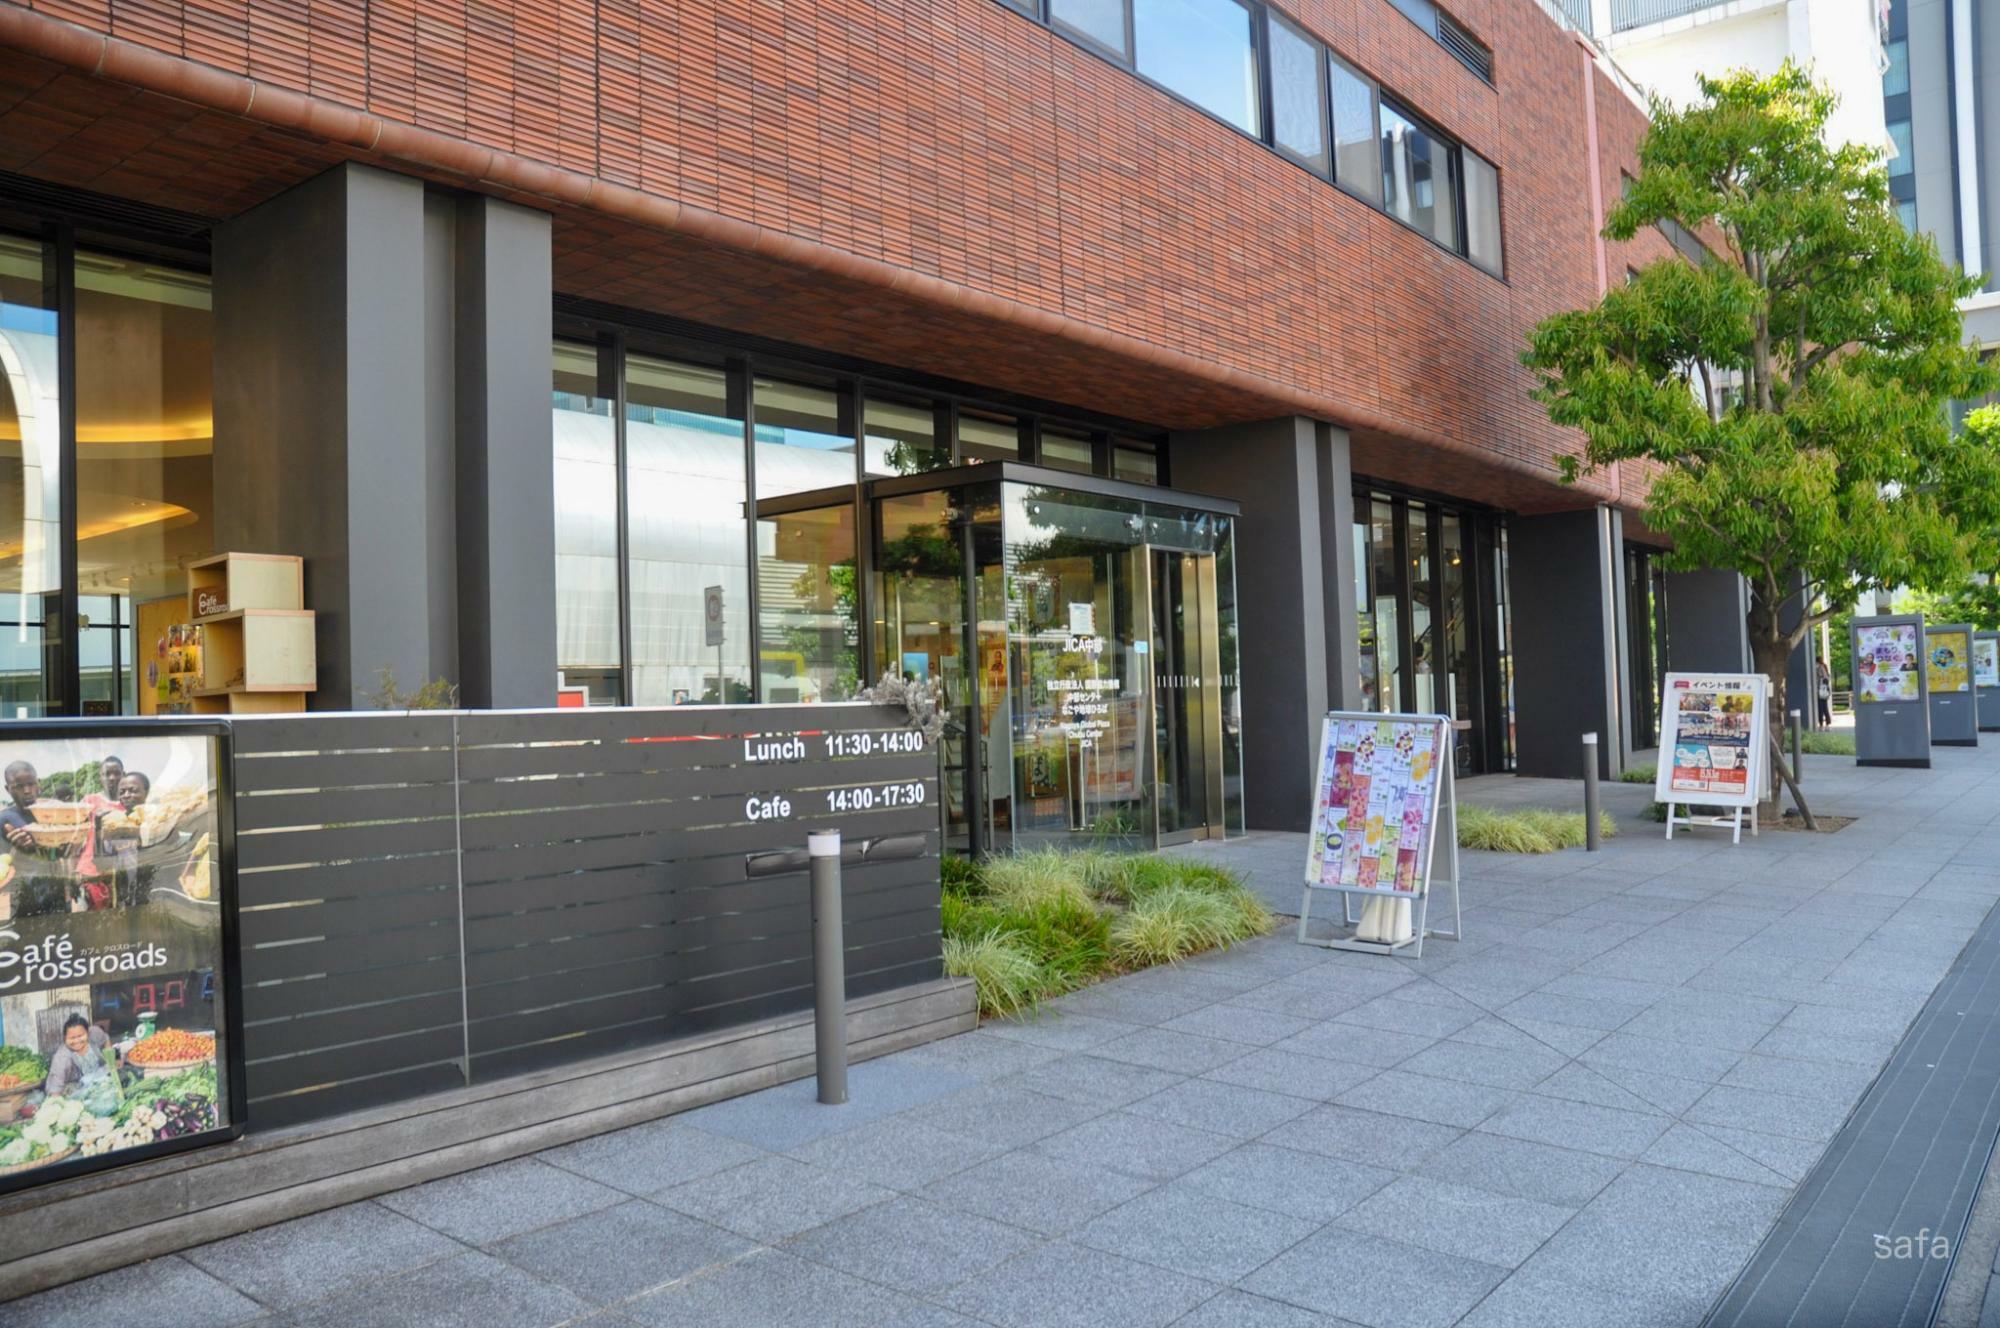 JICA中部「なごや地球ひろば」。入場無料なので電車やバスの待ち時間にどうぞ。Zepp Nagoyaの道向かいにあるので開場までの待ち時間にもおすすめ。世界の衣装体験コーナーもありますよ。